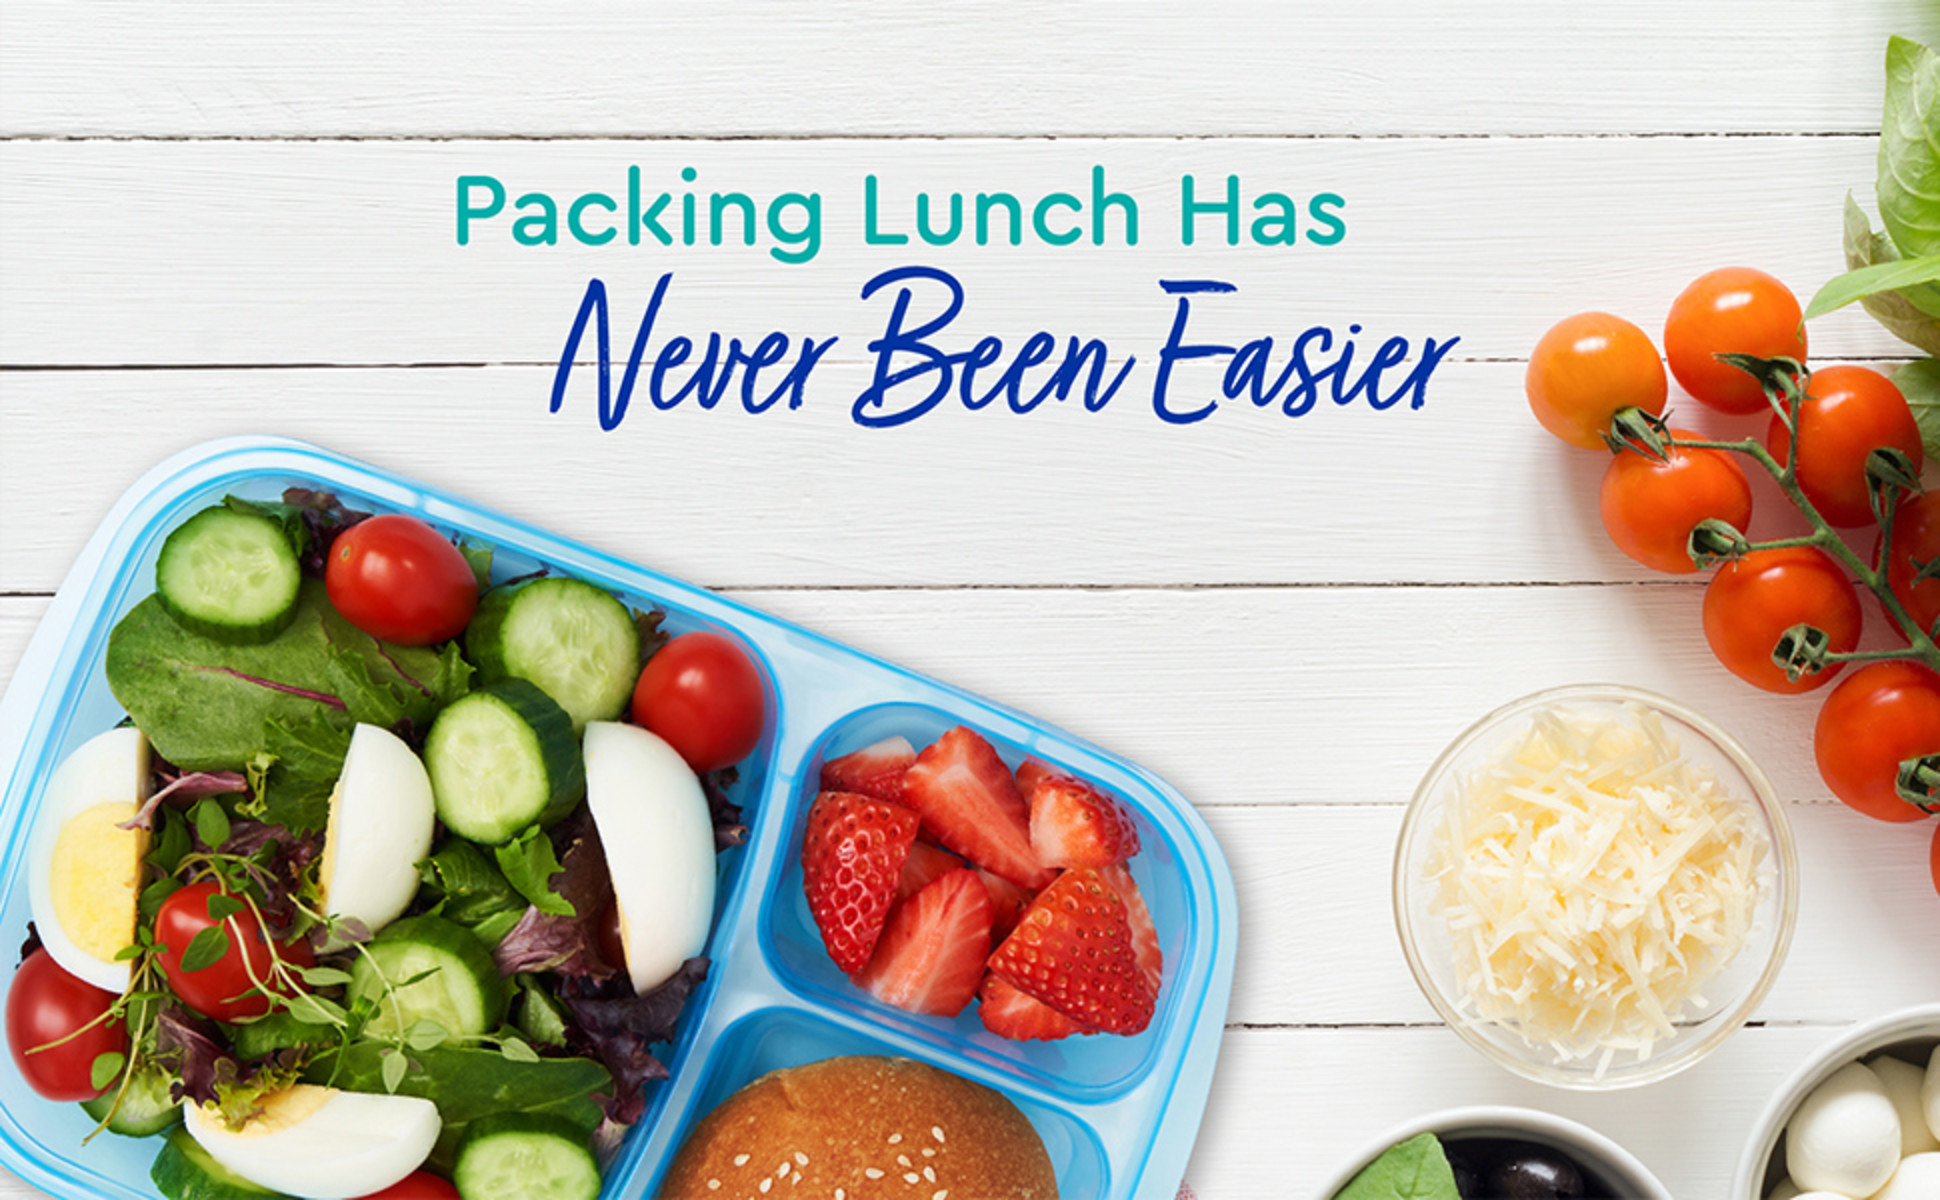  EasyLunchboxes® - Bento Lunch Boxes - Reusable 3